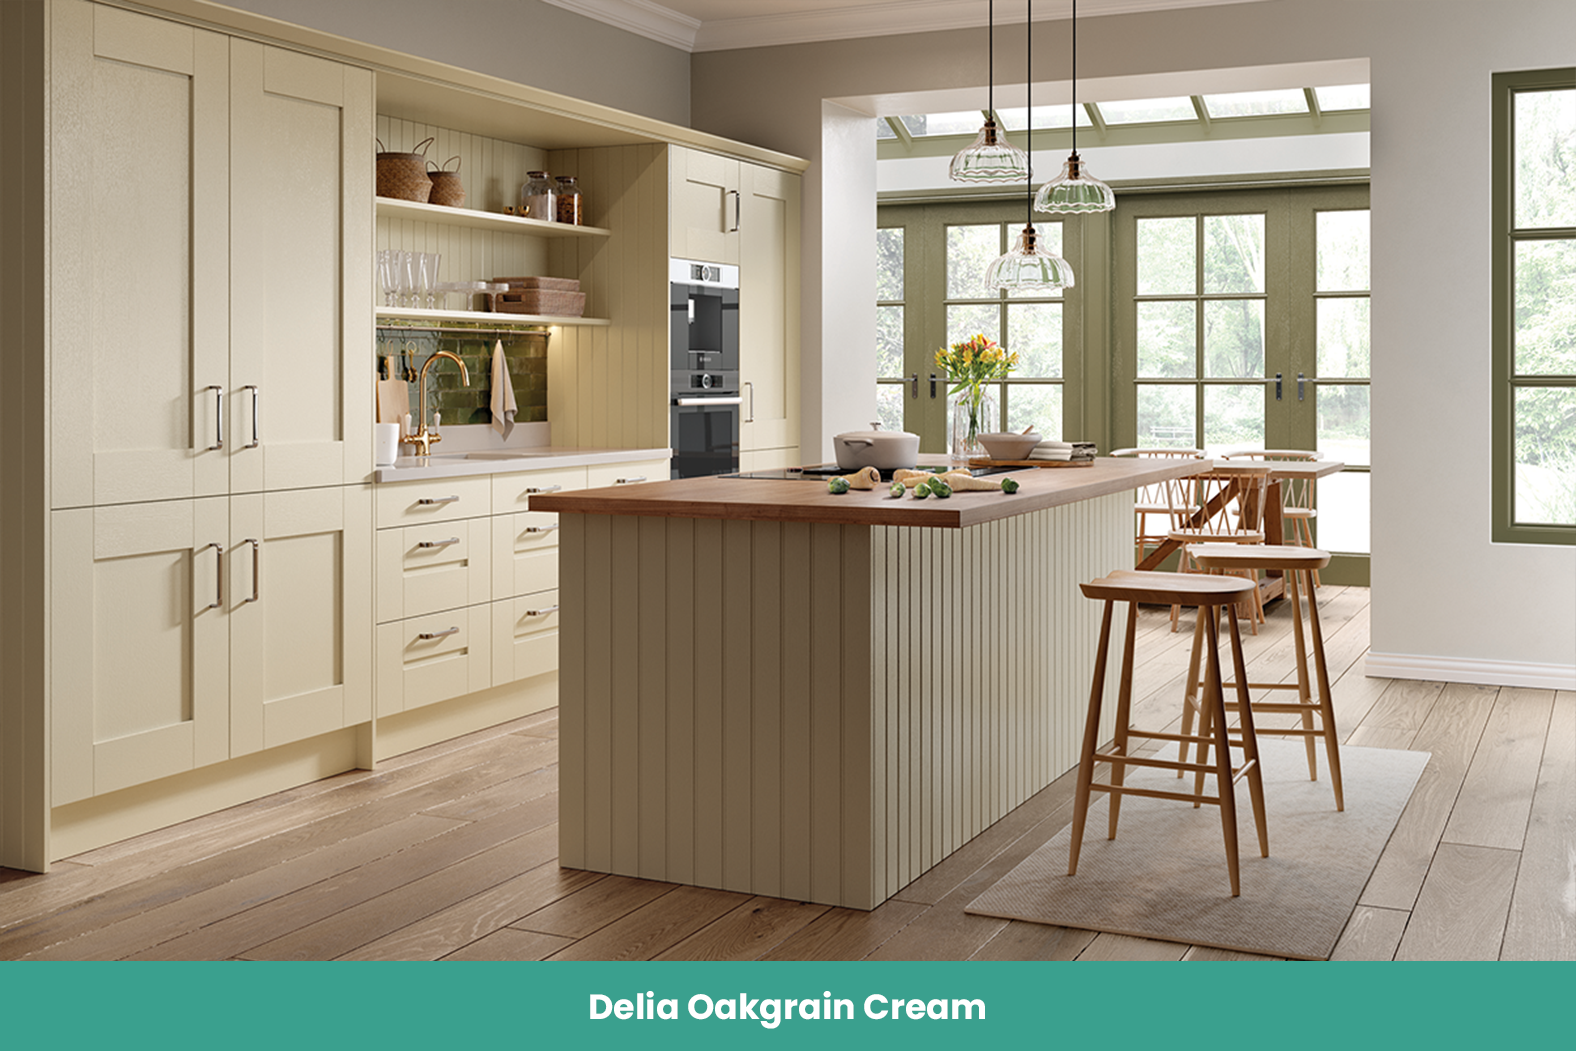 Delia Oakgrain Cream Kitchen TKC-kitchen pic